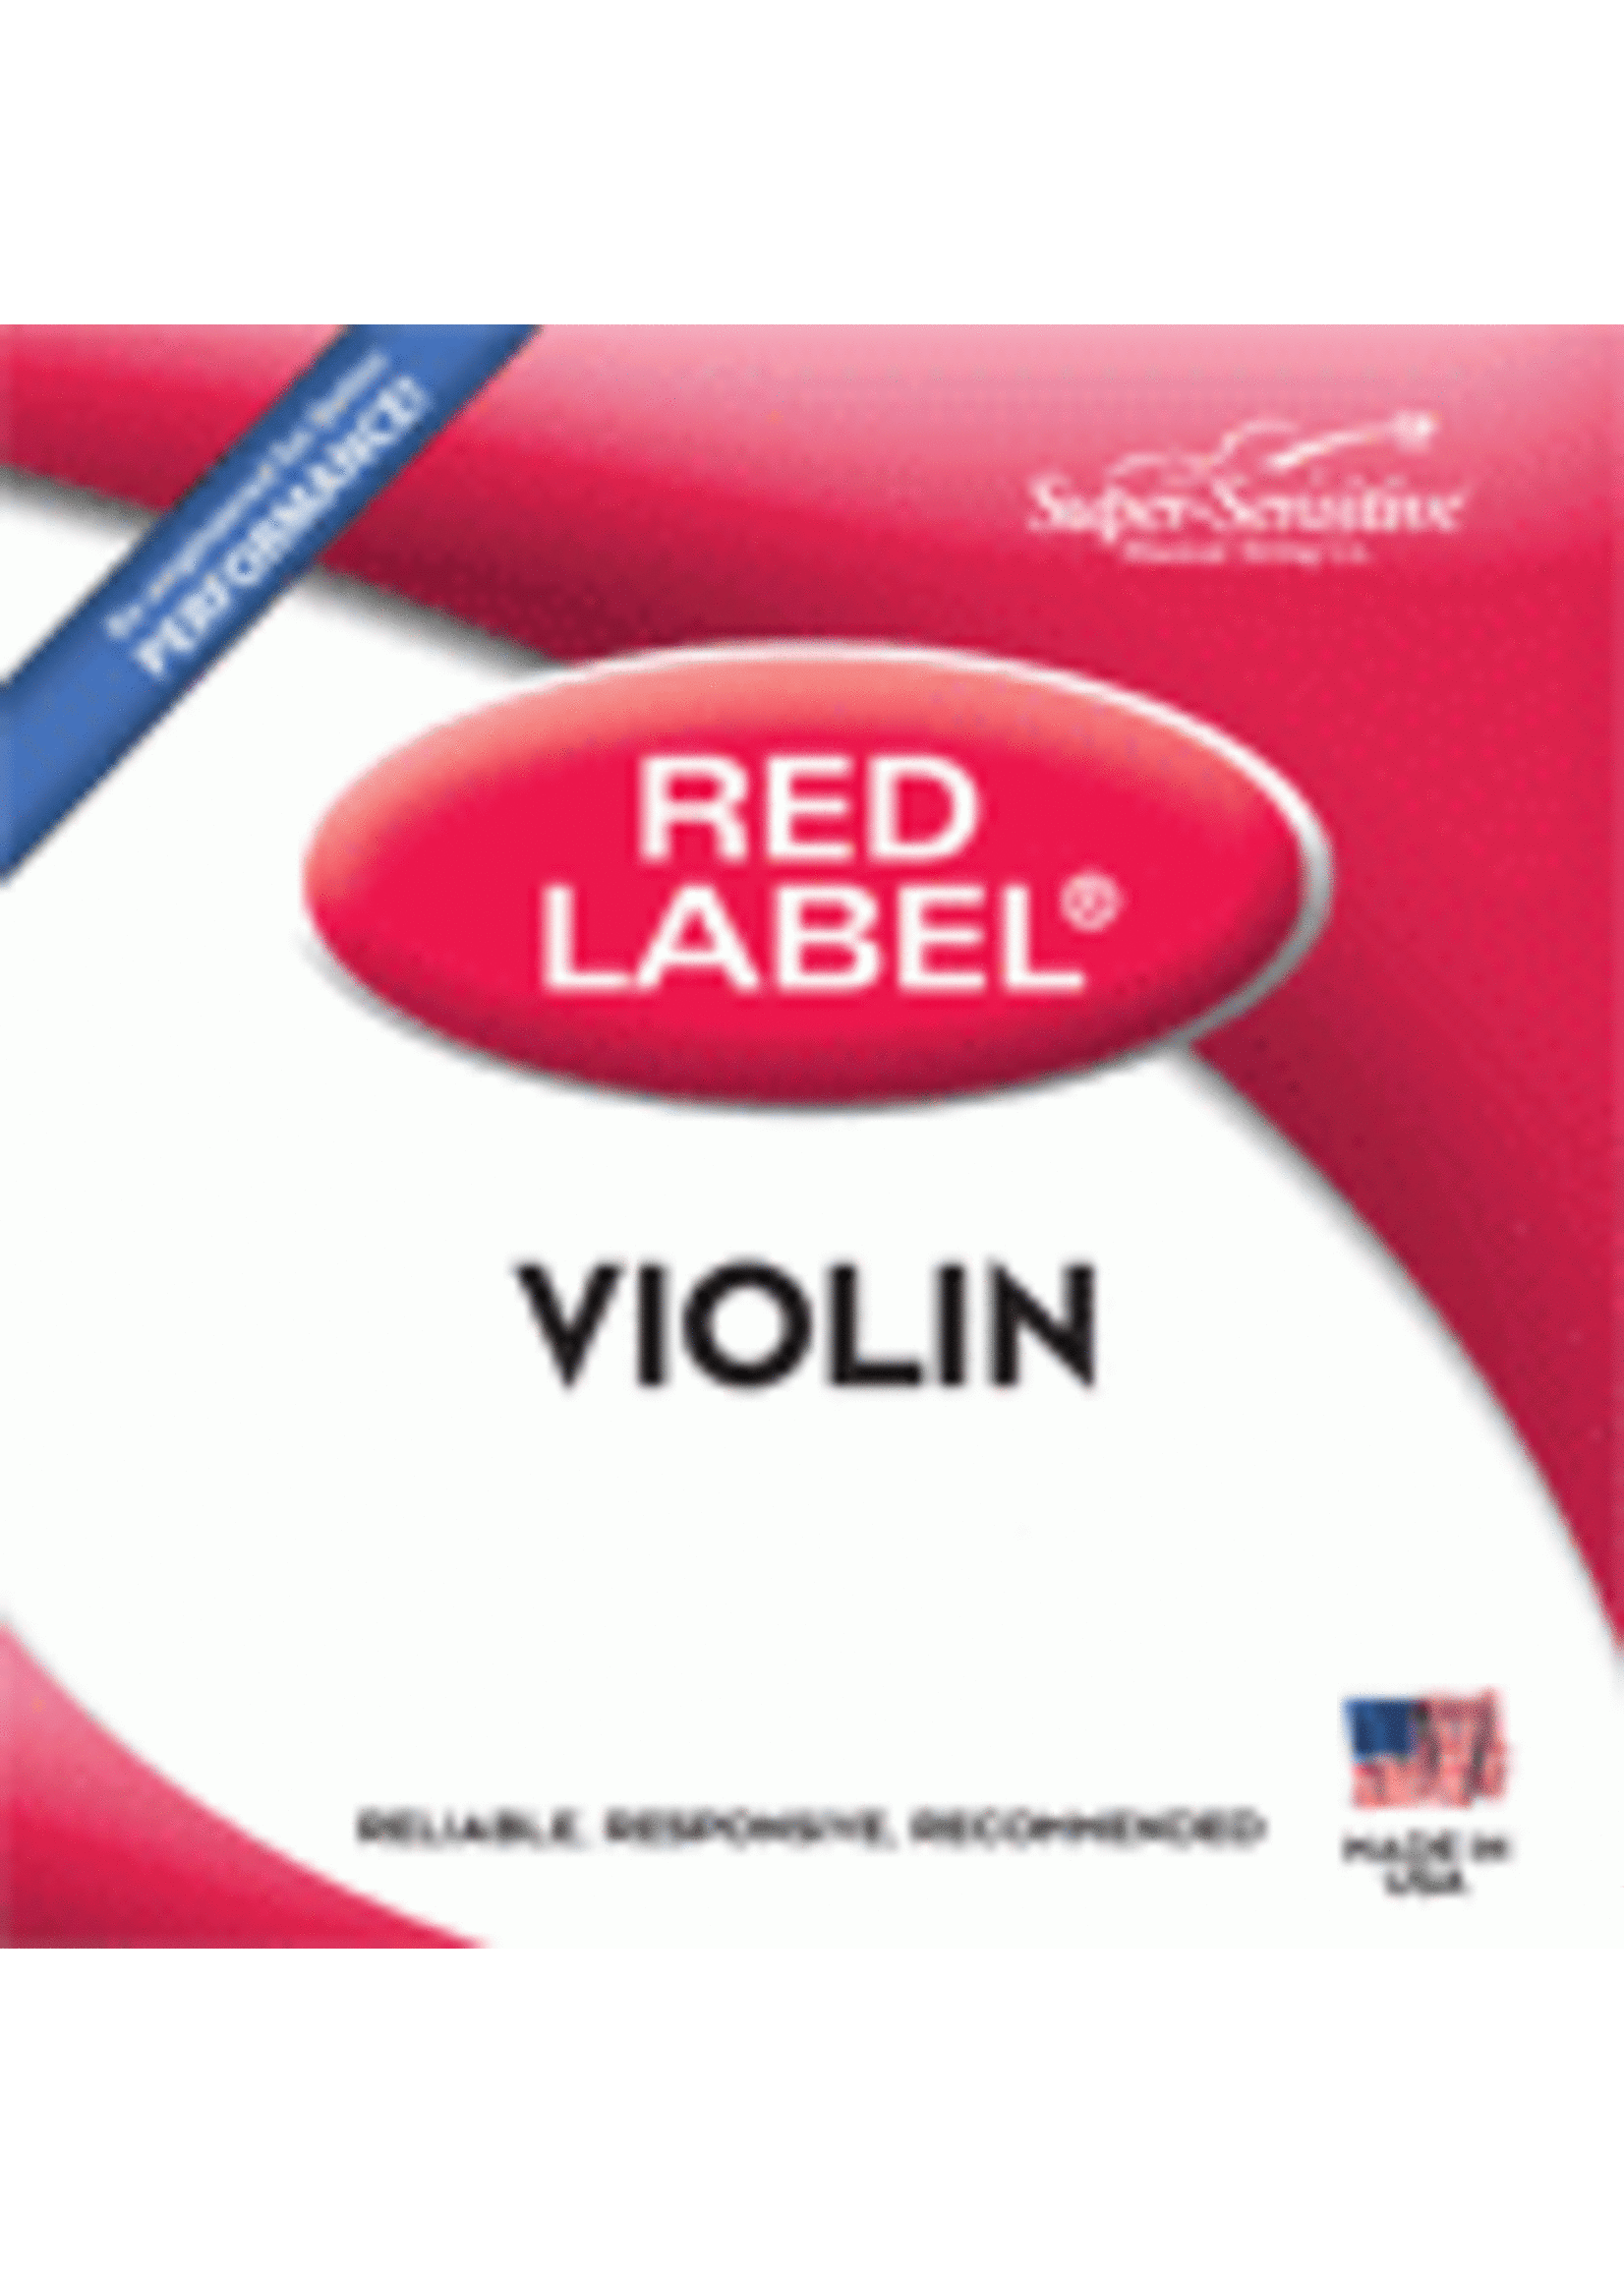 Super Sensitive Super Sensitive 2105 Red Label Violin 3/4 Size Strings